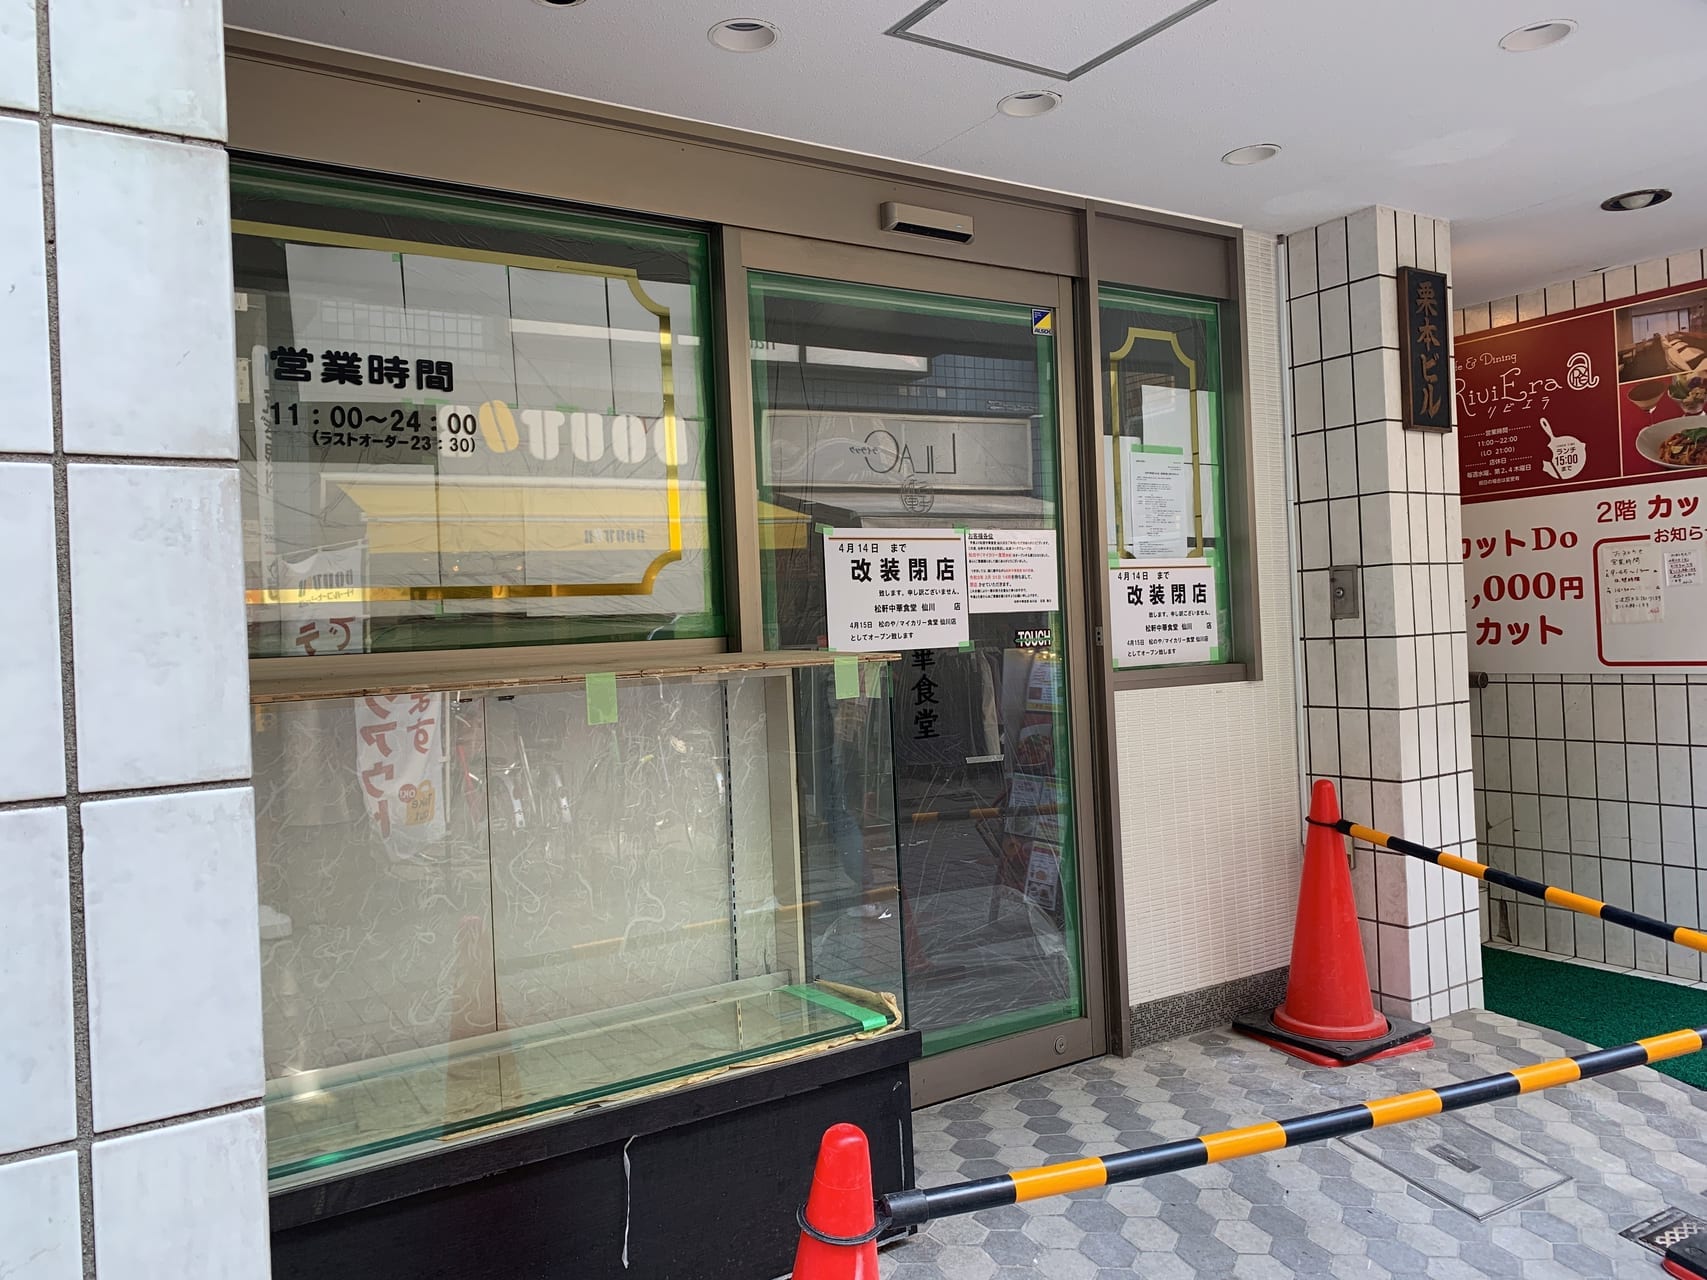 松のやとマイカリー食堂が仙川商店街にオープンしました